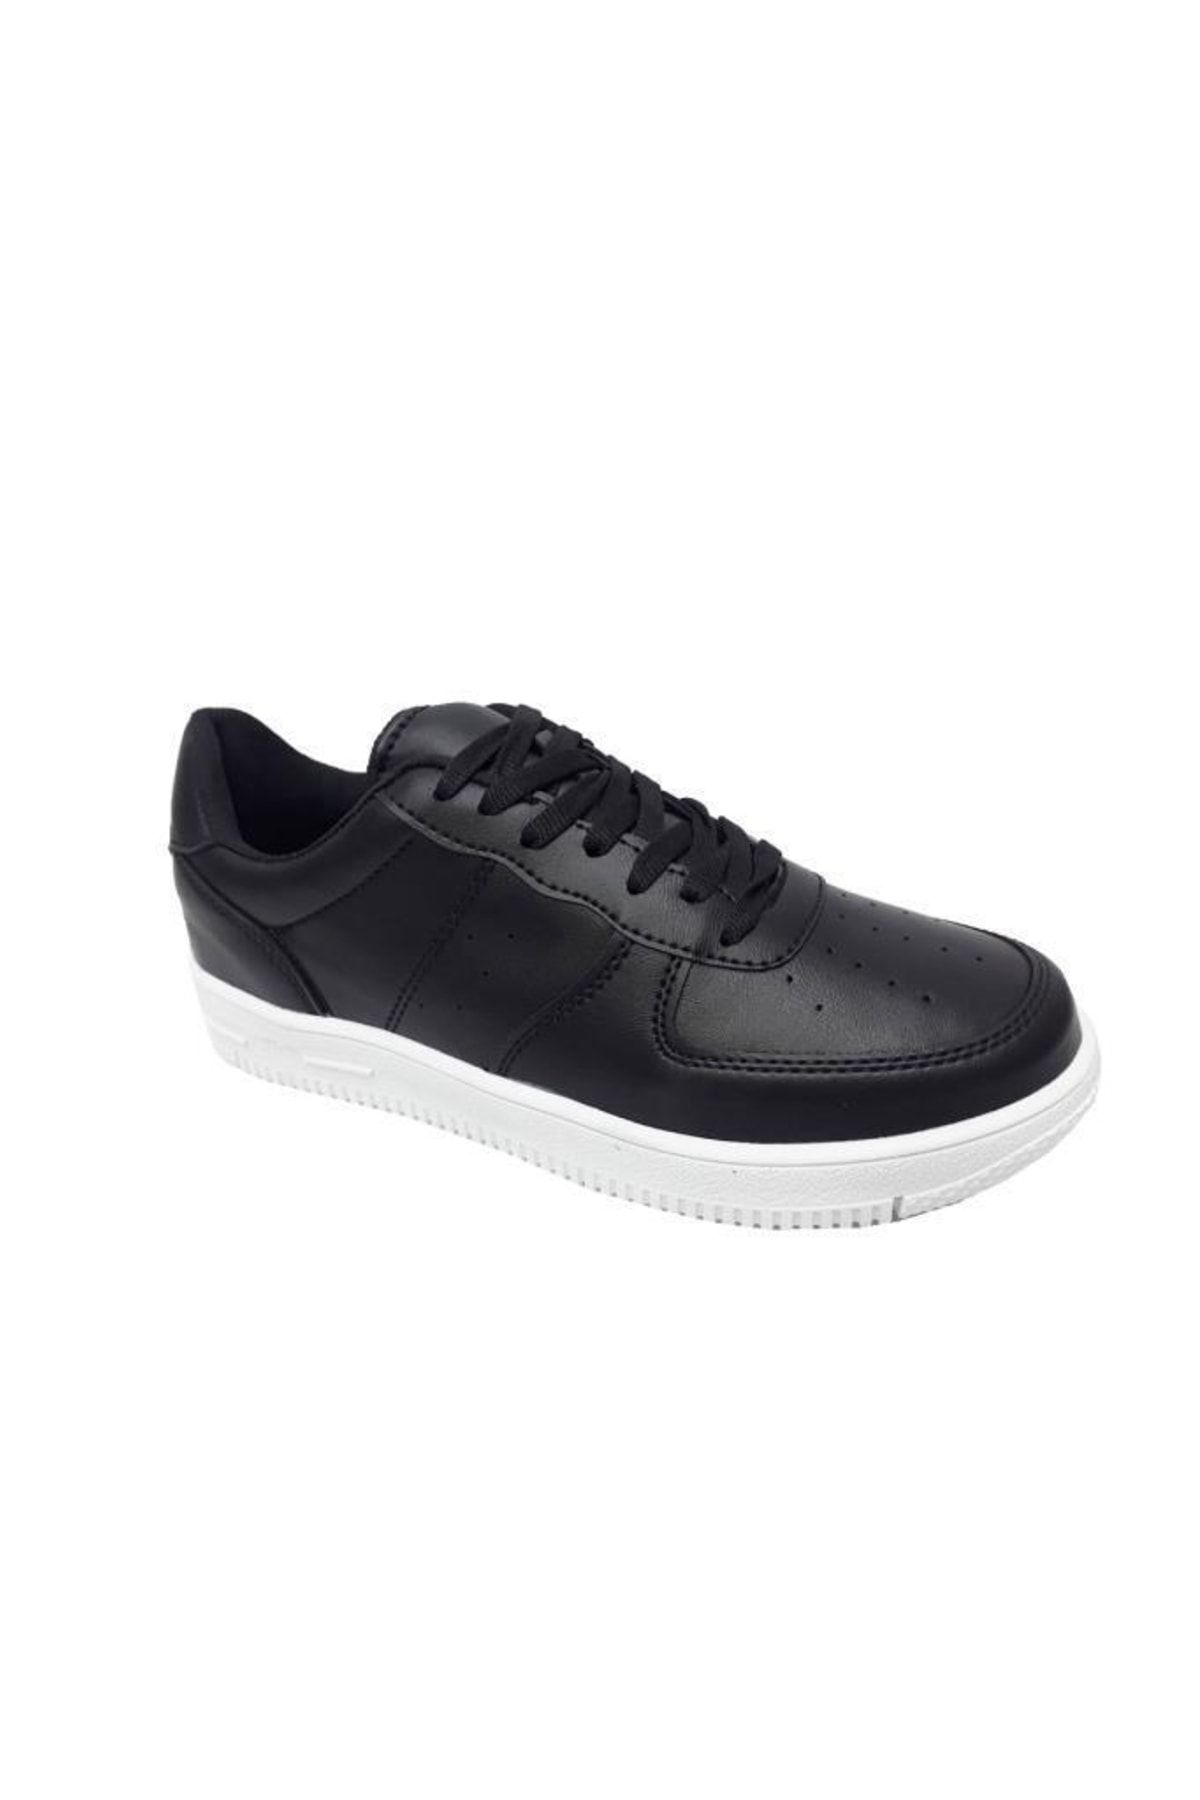 Zigana Siyah - 002 Deri Erkek Sneakers Ayakkabı